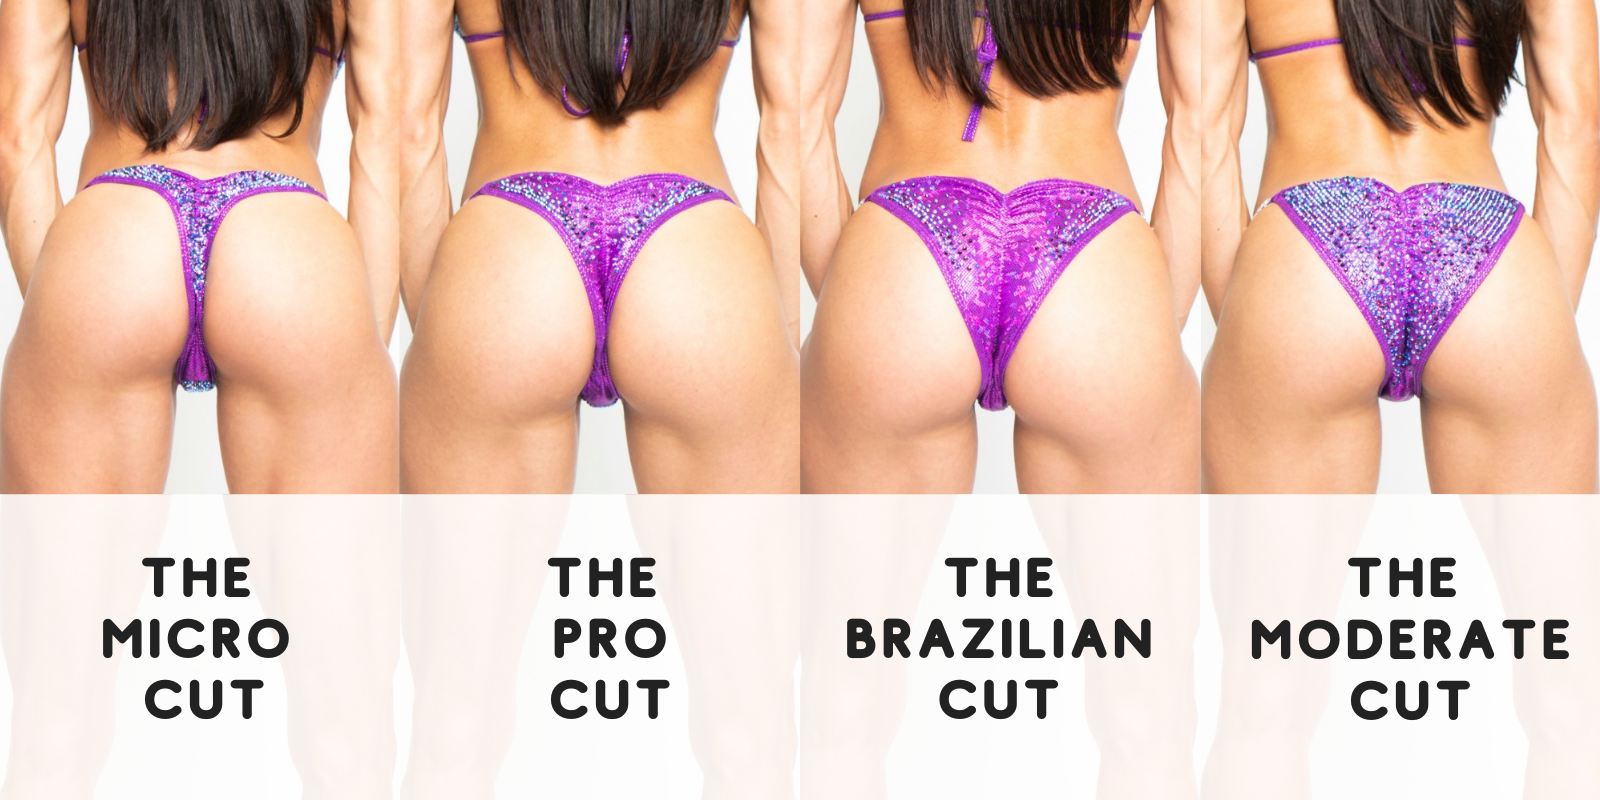 Brazilian Cut Competition Bikini for NPC Pro Cut Competition Bikini, Micro Cheeky competition suit, suit bottoms for ifbb npc bikini competition